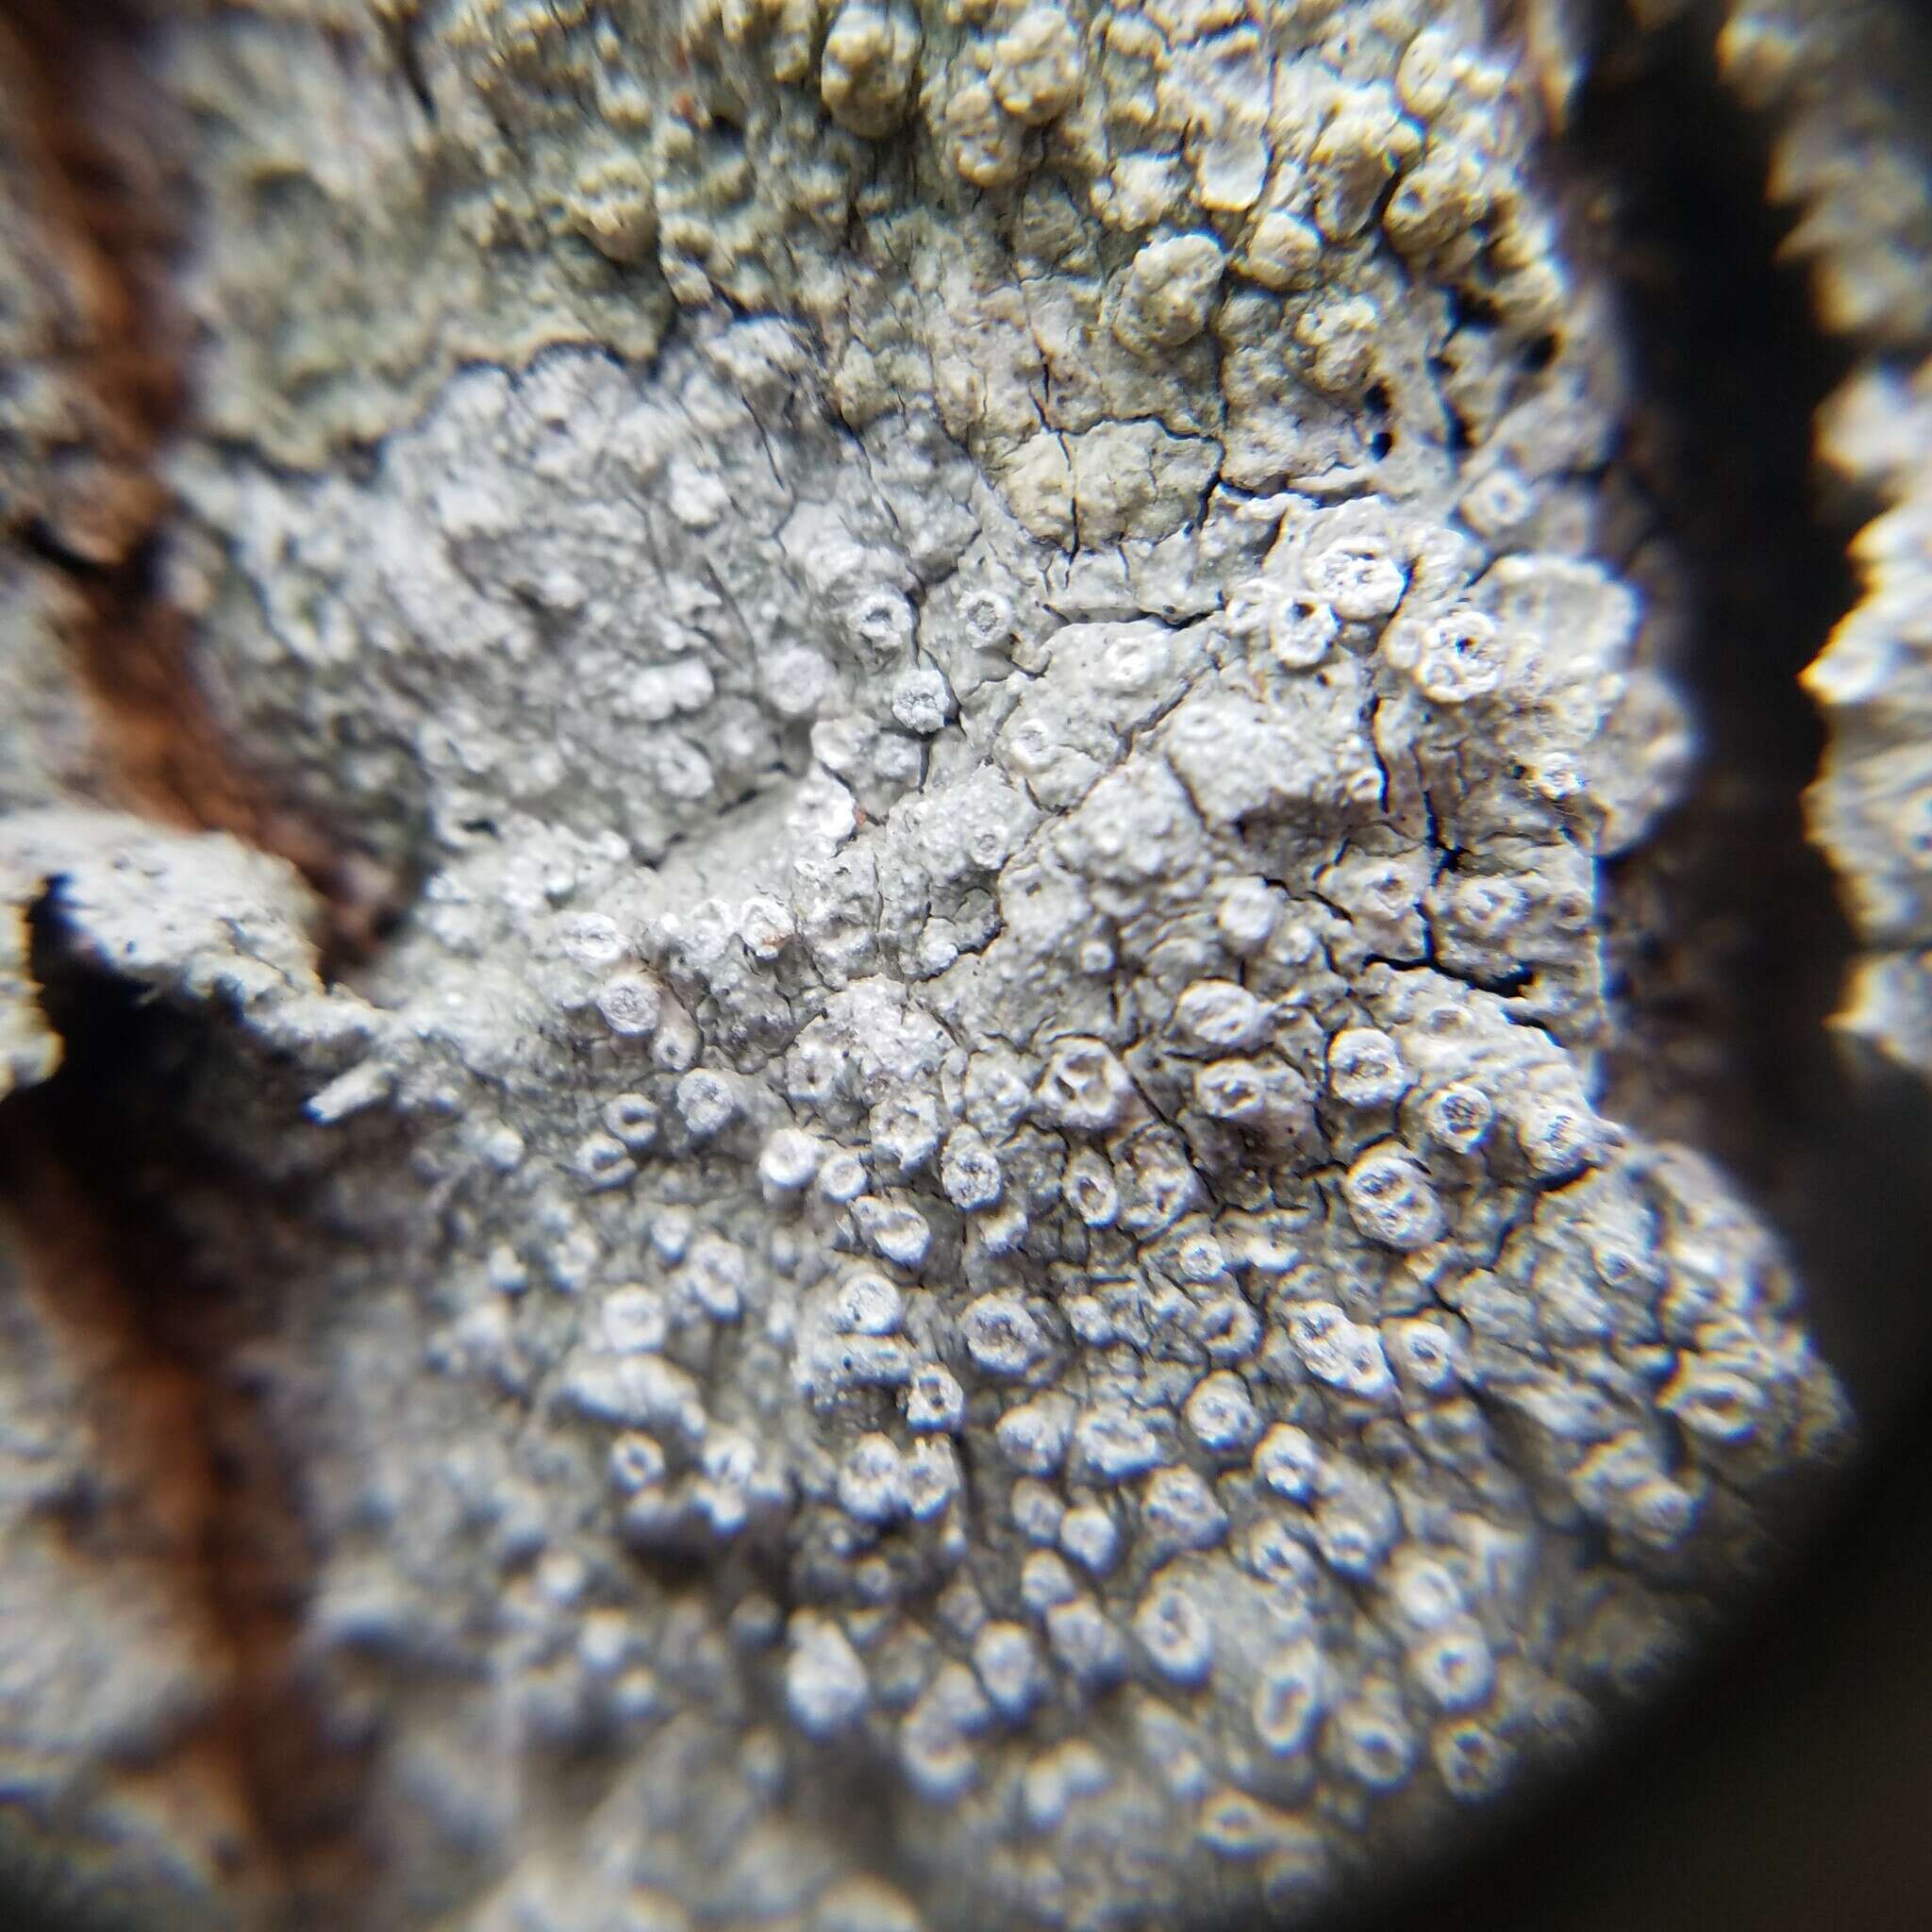 Image of pore lichen